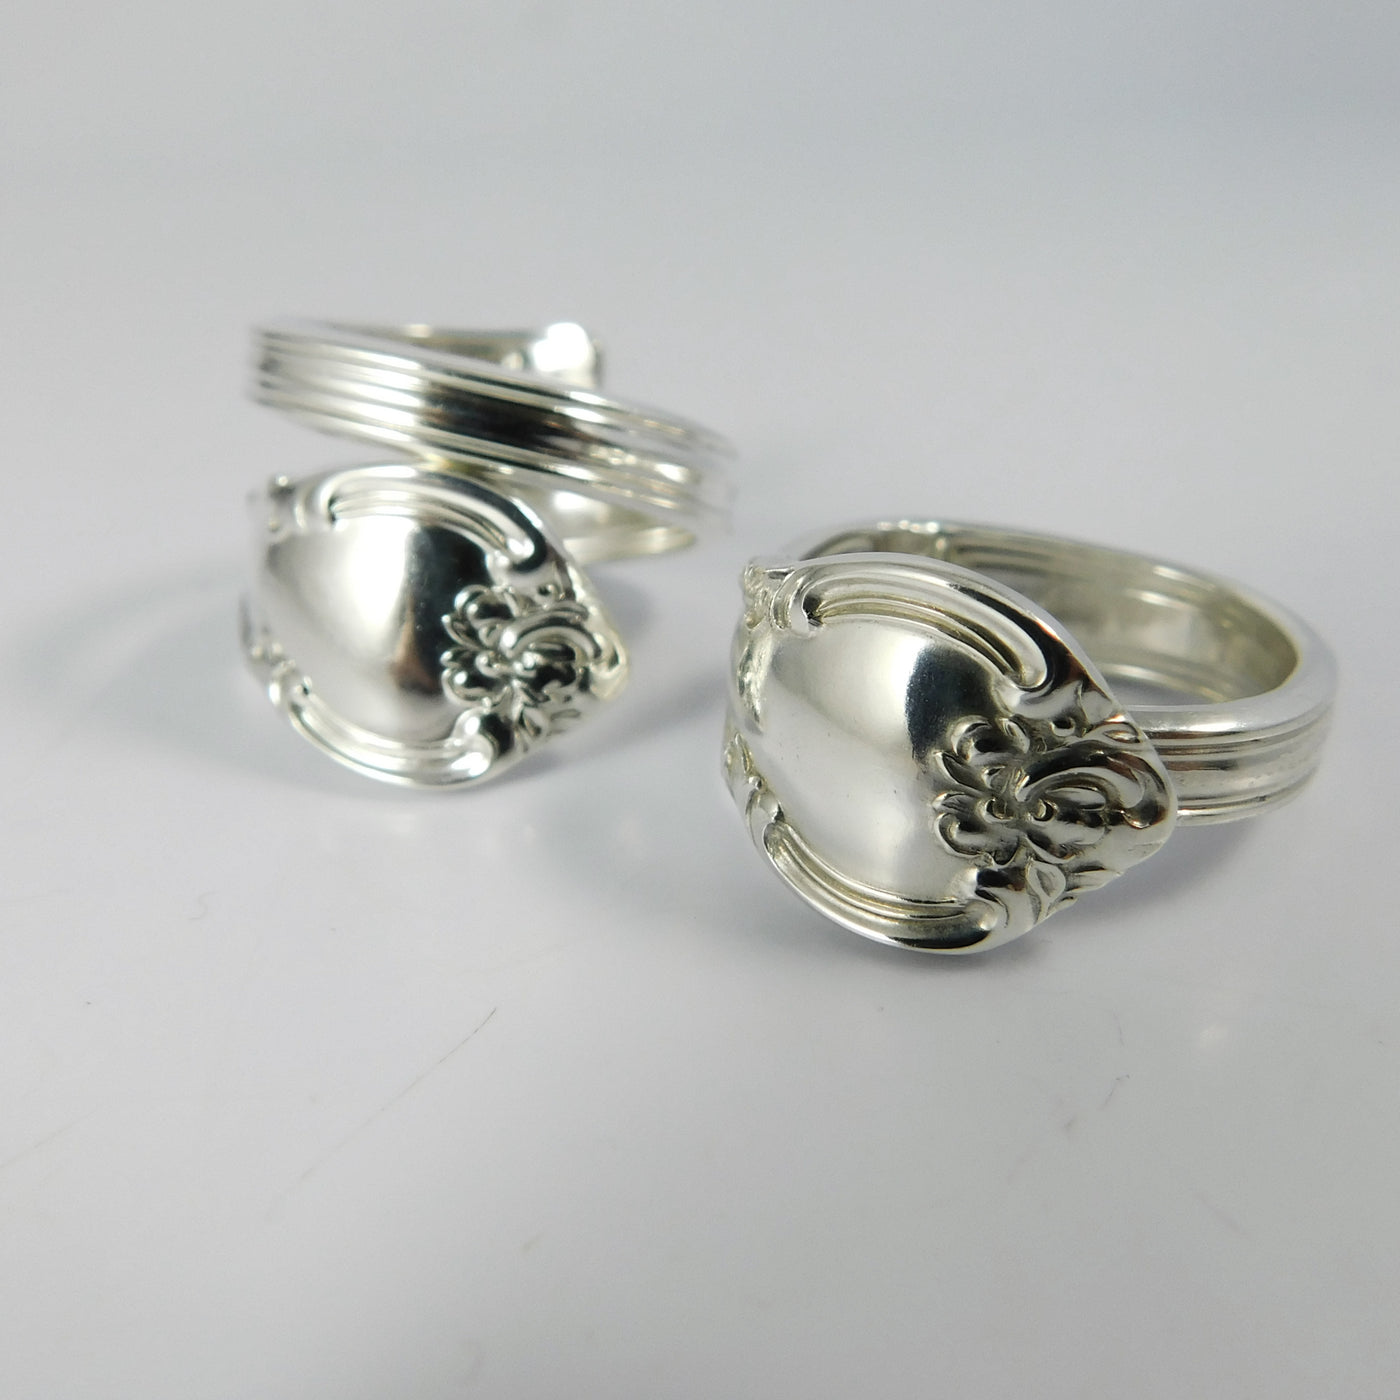 Sterling silver spoon rings